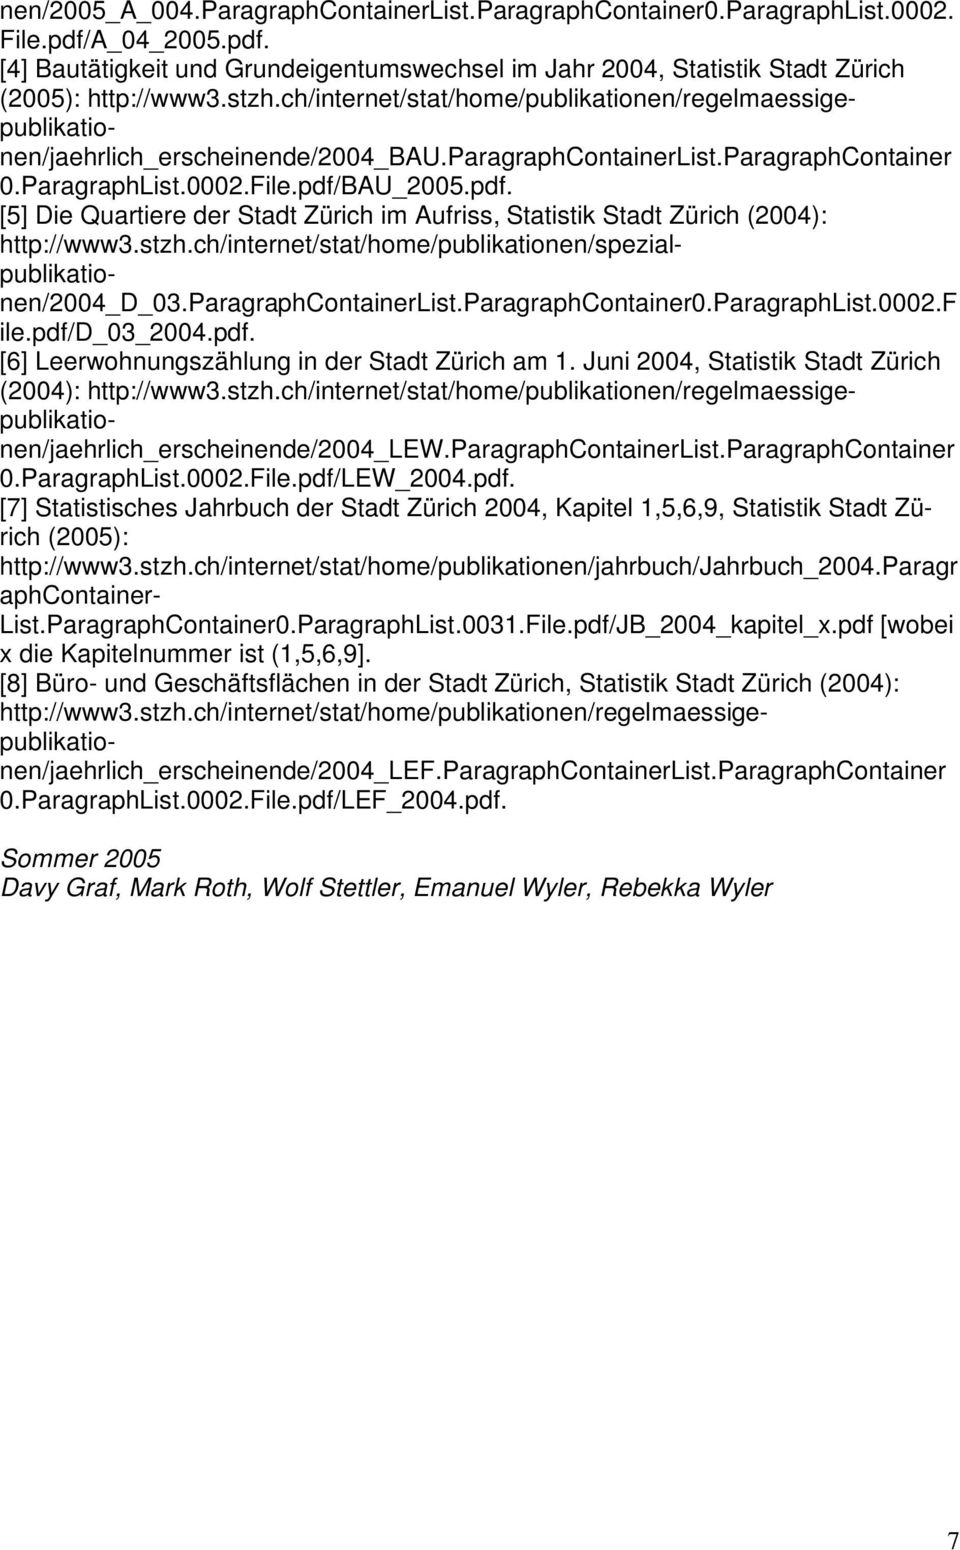 BAU_2005.pdf. [5] Die Quartiere der Stadt Zürich im Aufriss, Statistik Stadt Zürich (2004): http://www3.stzh.ch/internet/stat/home/publikationen/spezialpublikationen/2004_d_03.paragraphcontainerlist.